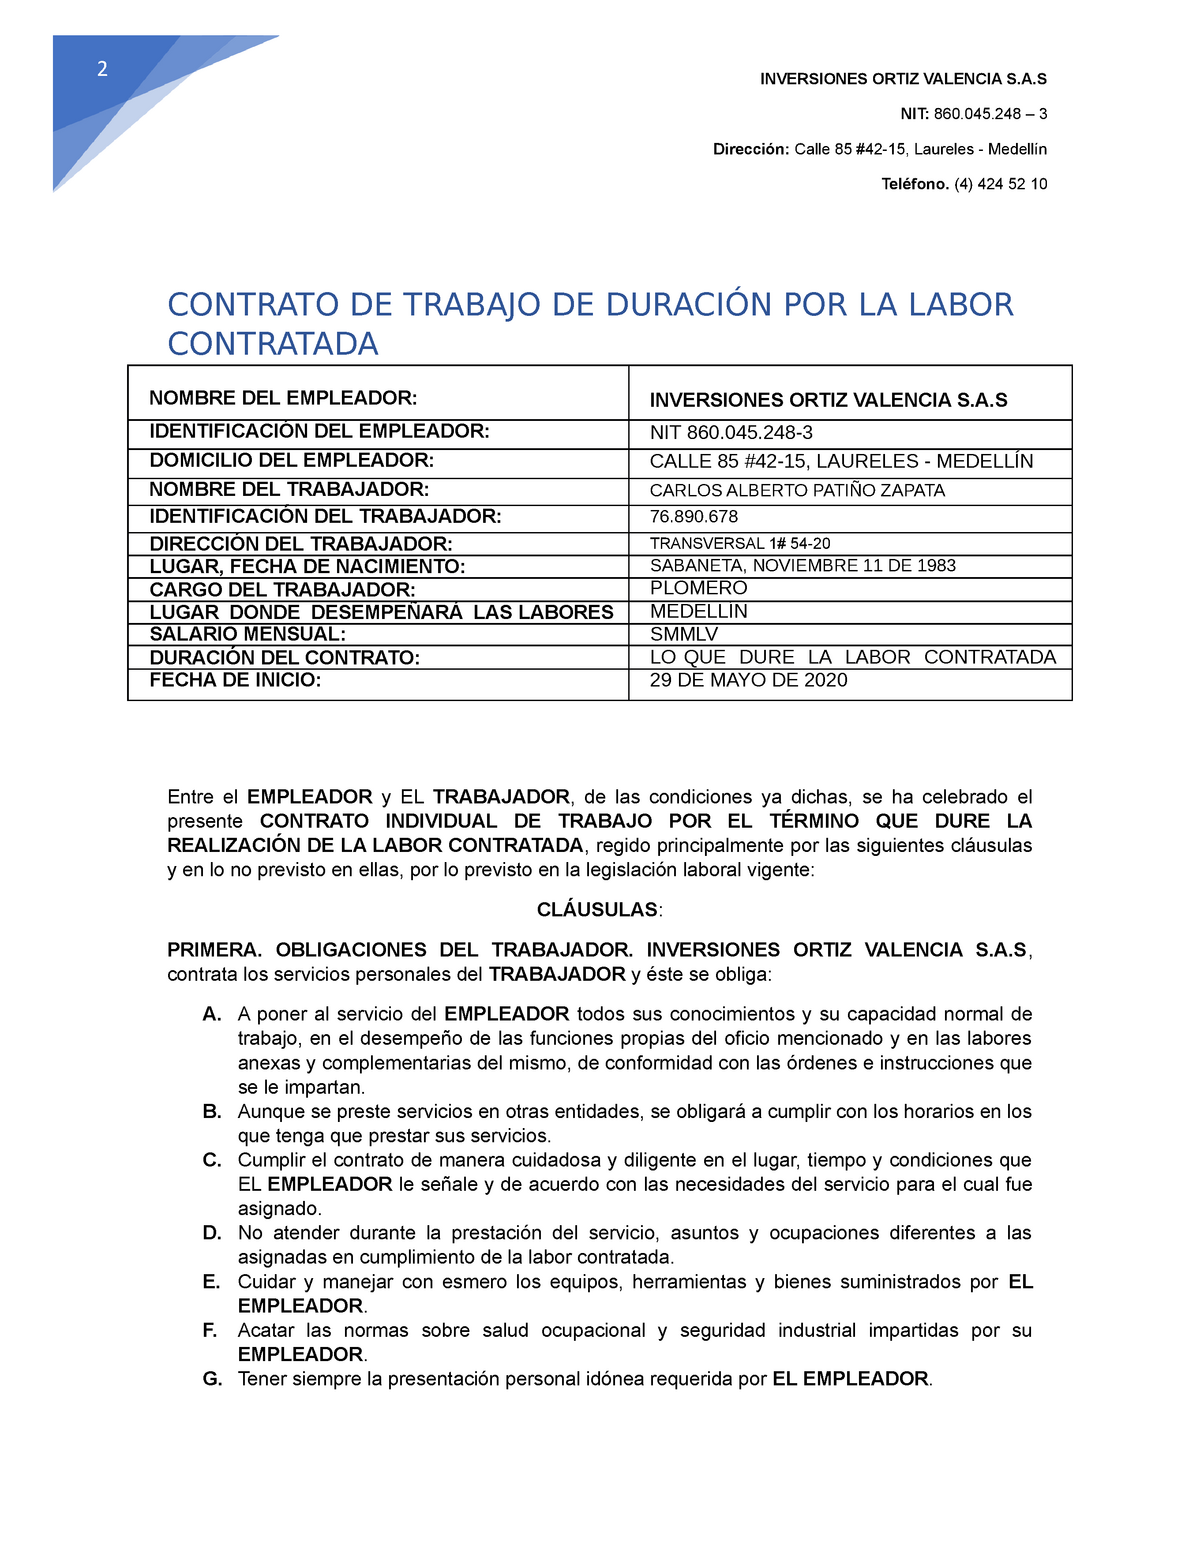 Contrato POR OBRA O Labor - 2 INVERSIONES ORTIZ VALENCIA  NIT:  –  3 Dirección: Calle 85 - Studocu